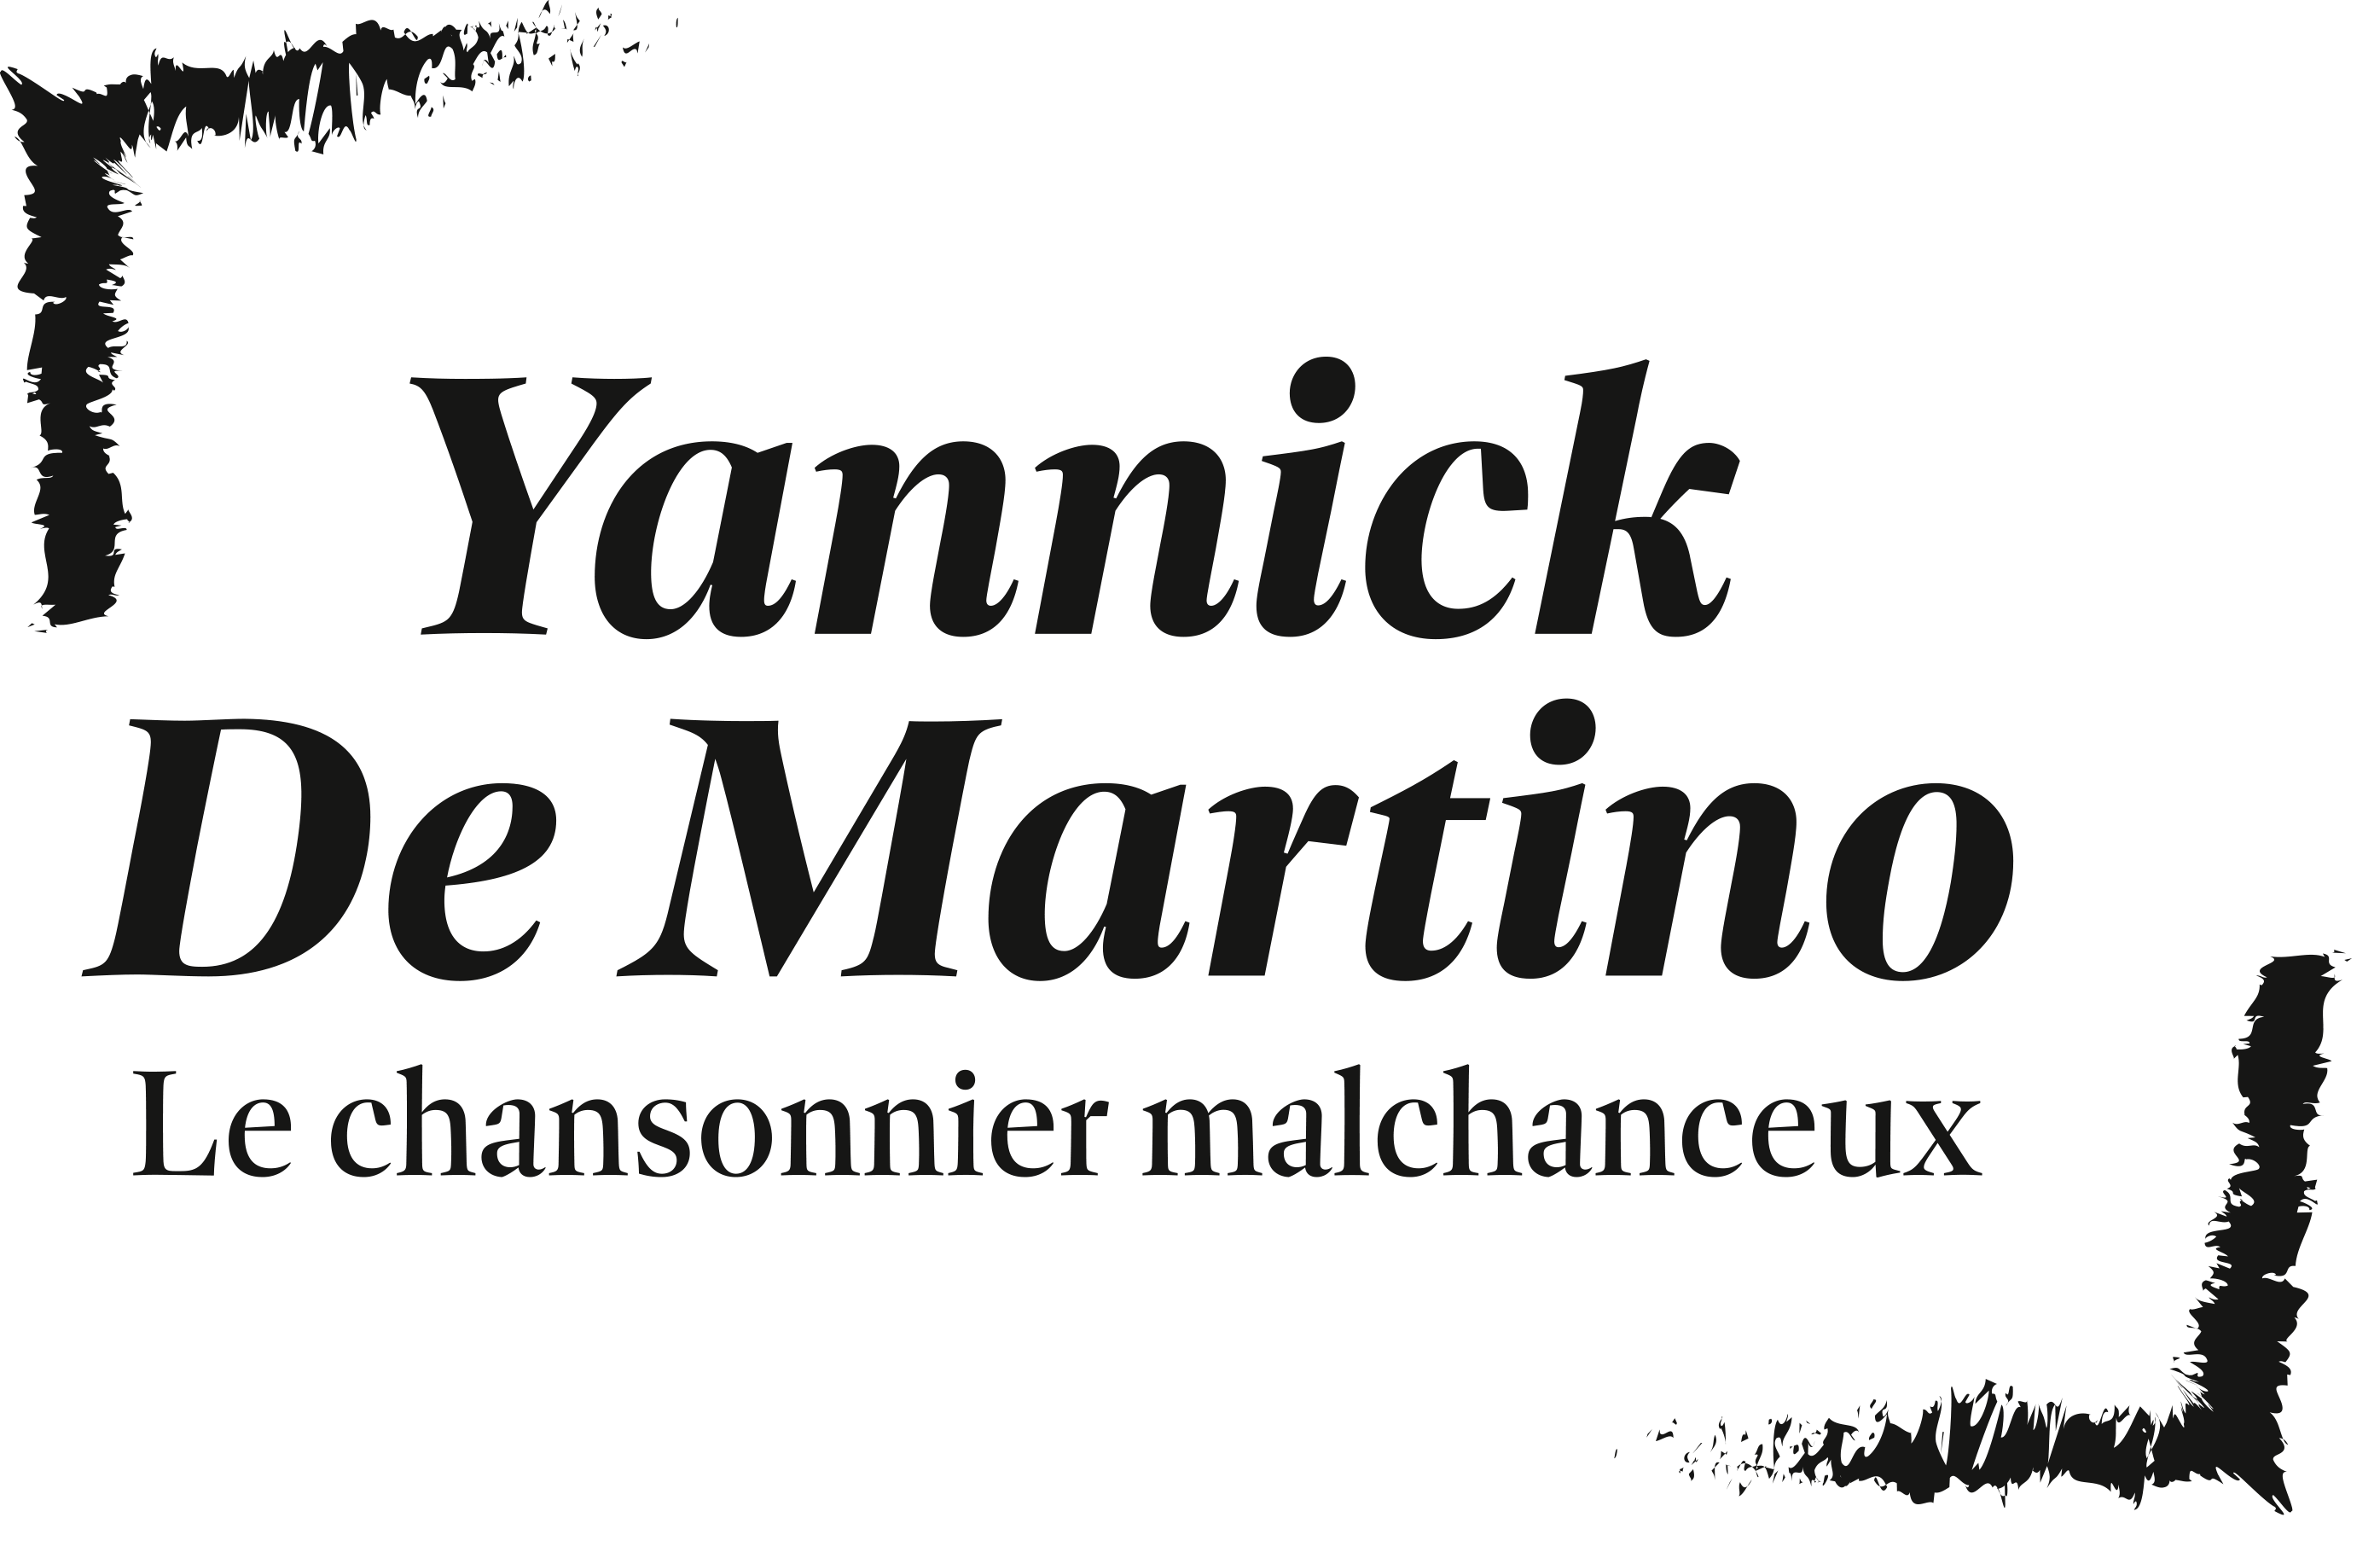 Yannick De Martino&nbsp;:&nbsp;le chansonnier malchanceux